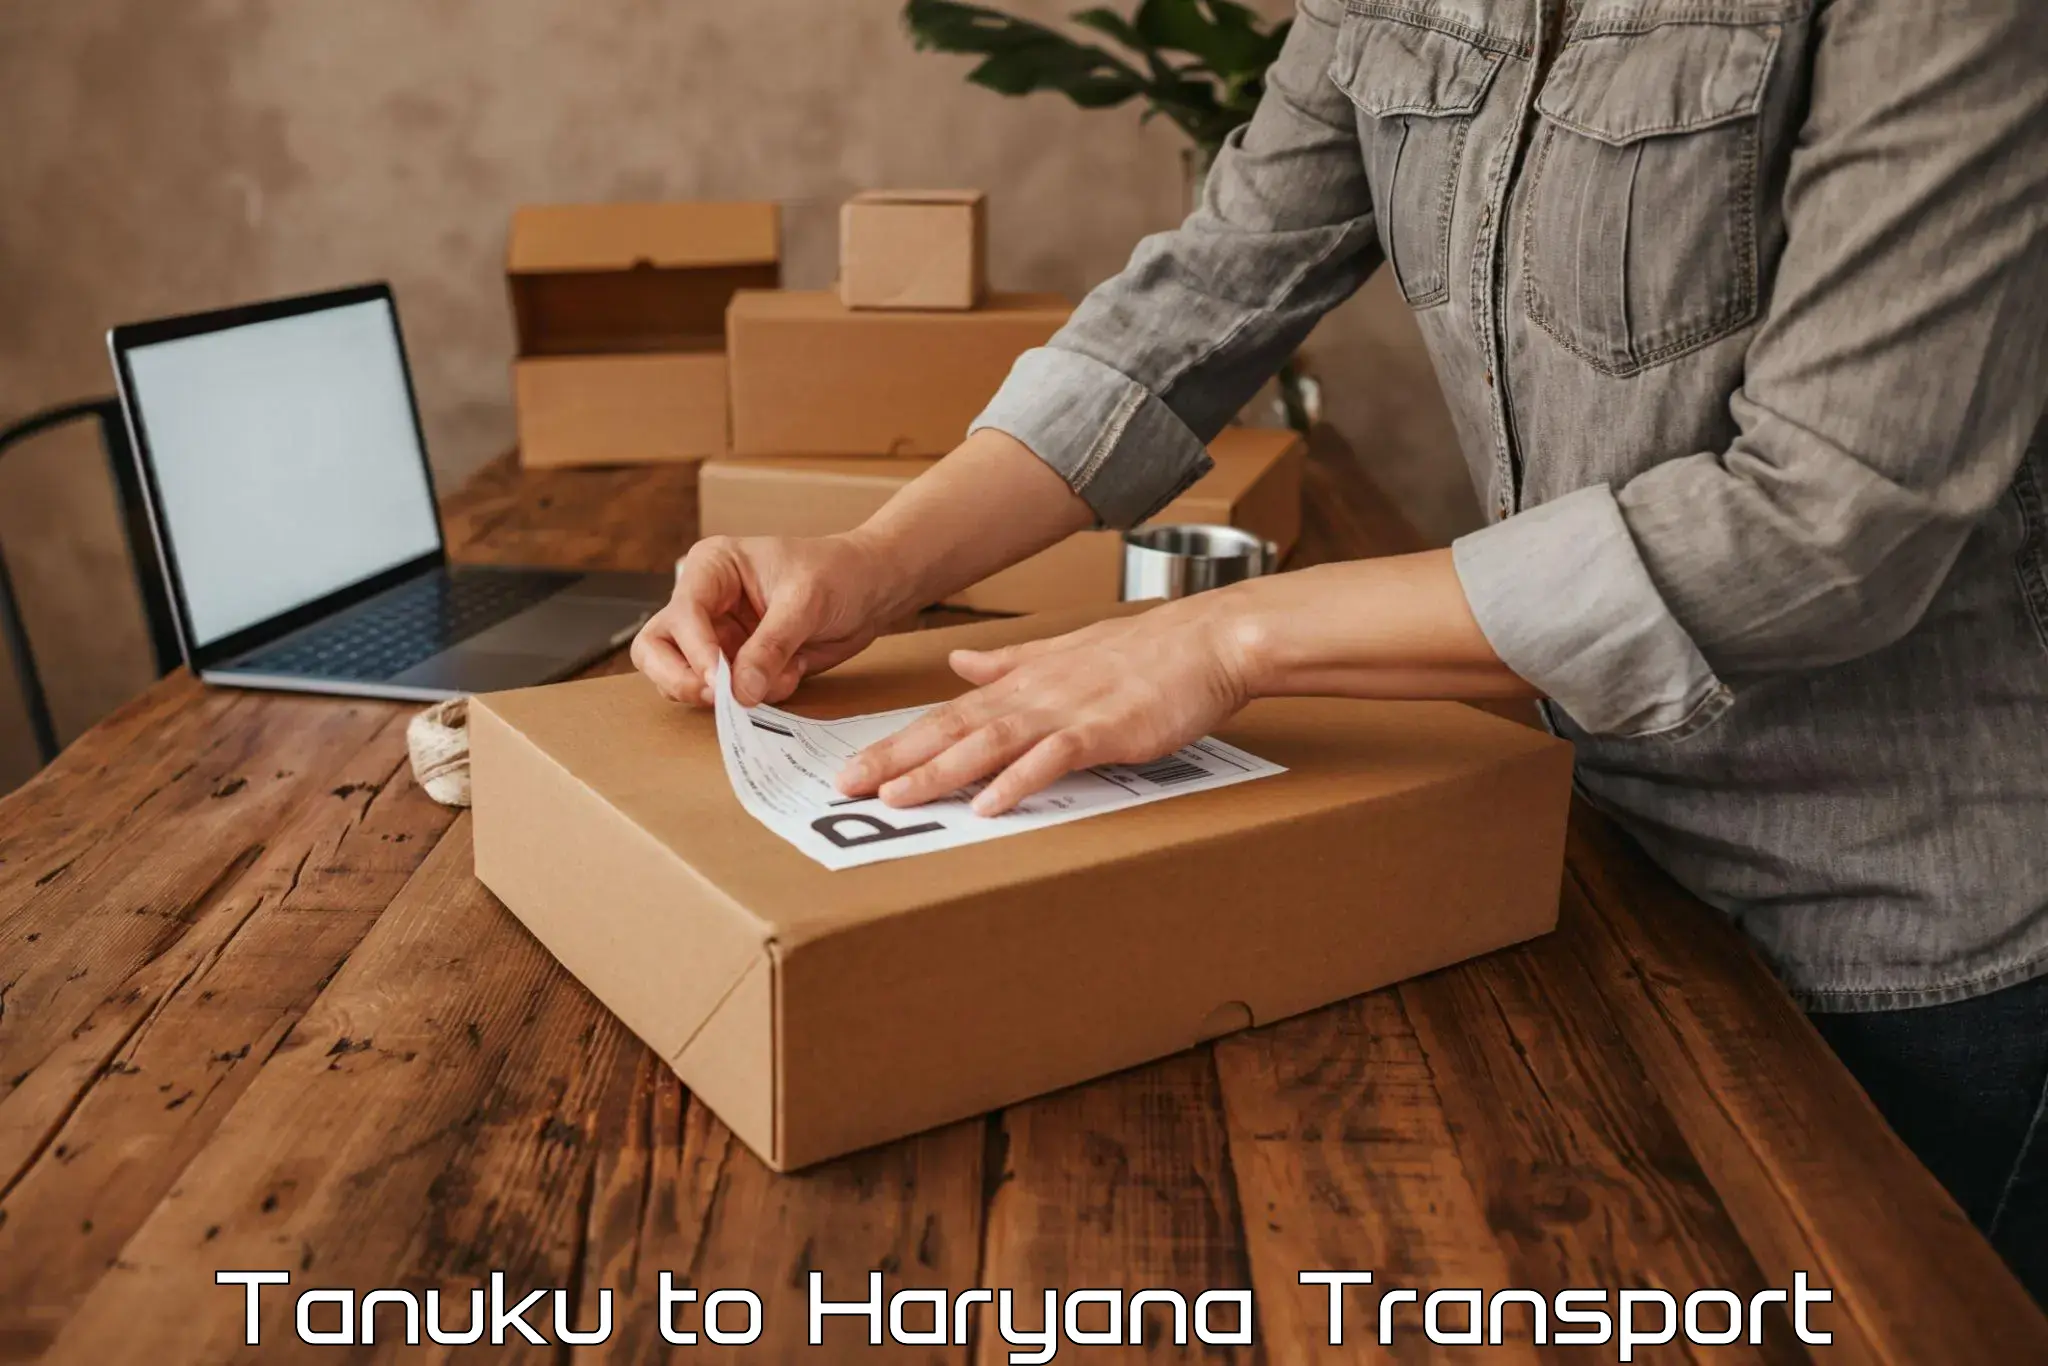 Transport in sharing Tanuku to Agroha